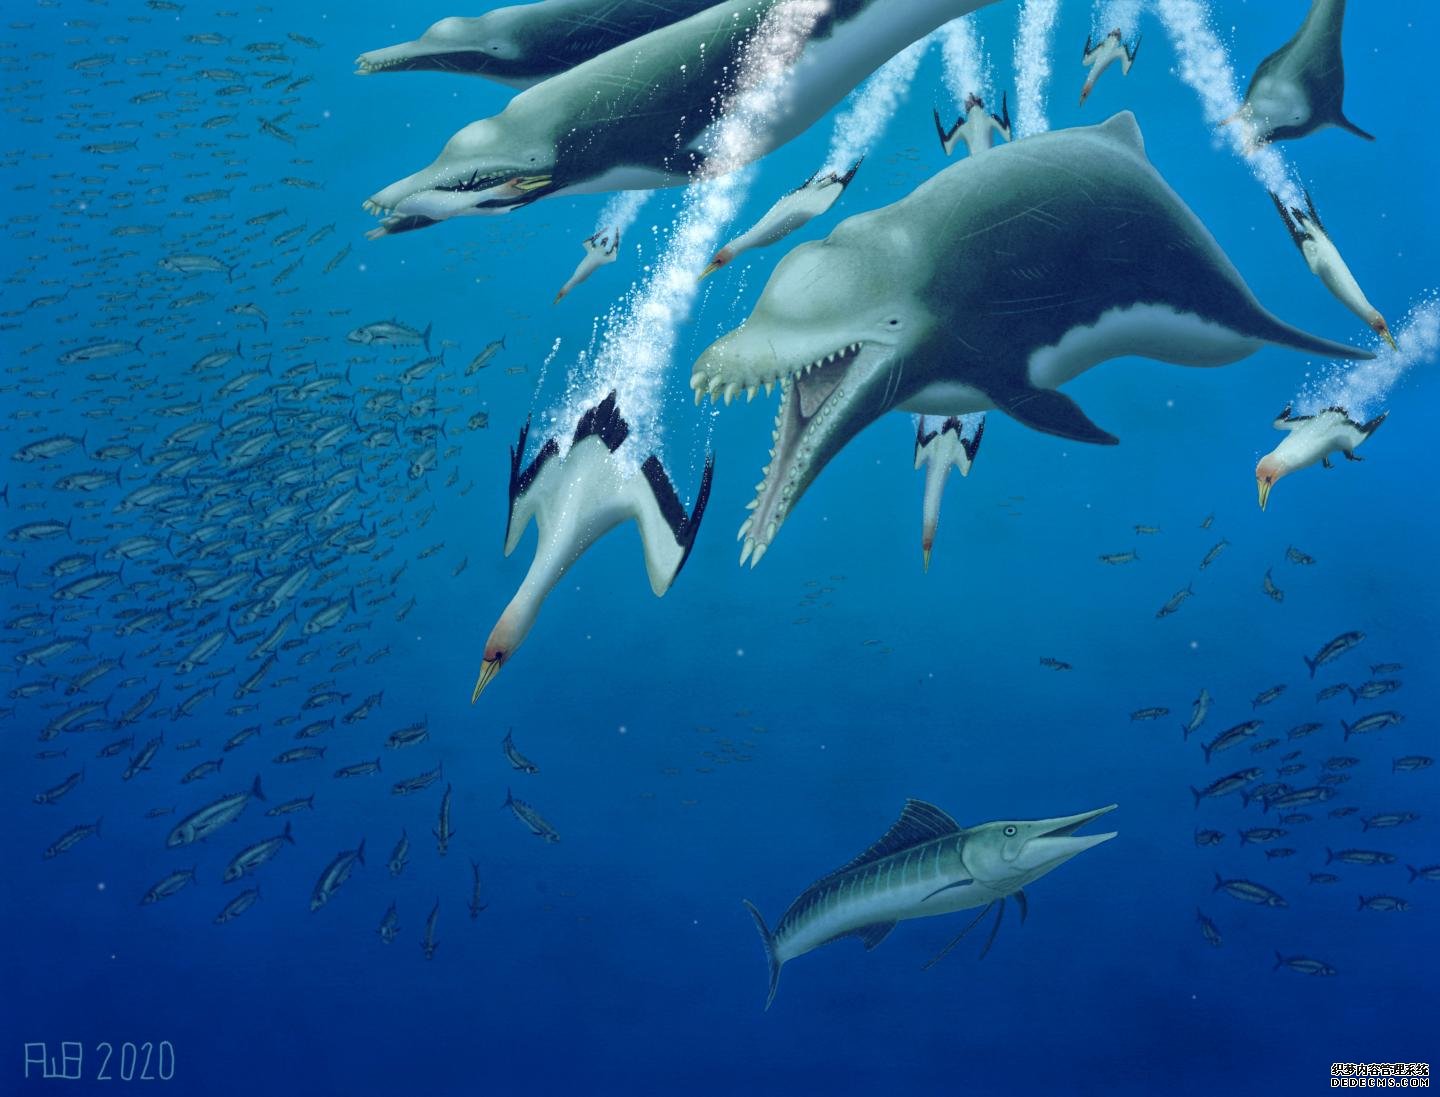 已经灭绝的海豚的15杏耀yl英尺长的骨骼表明鲸类也在进行类似的进化